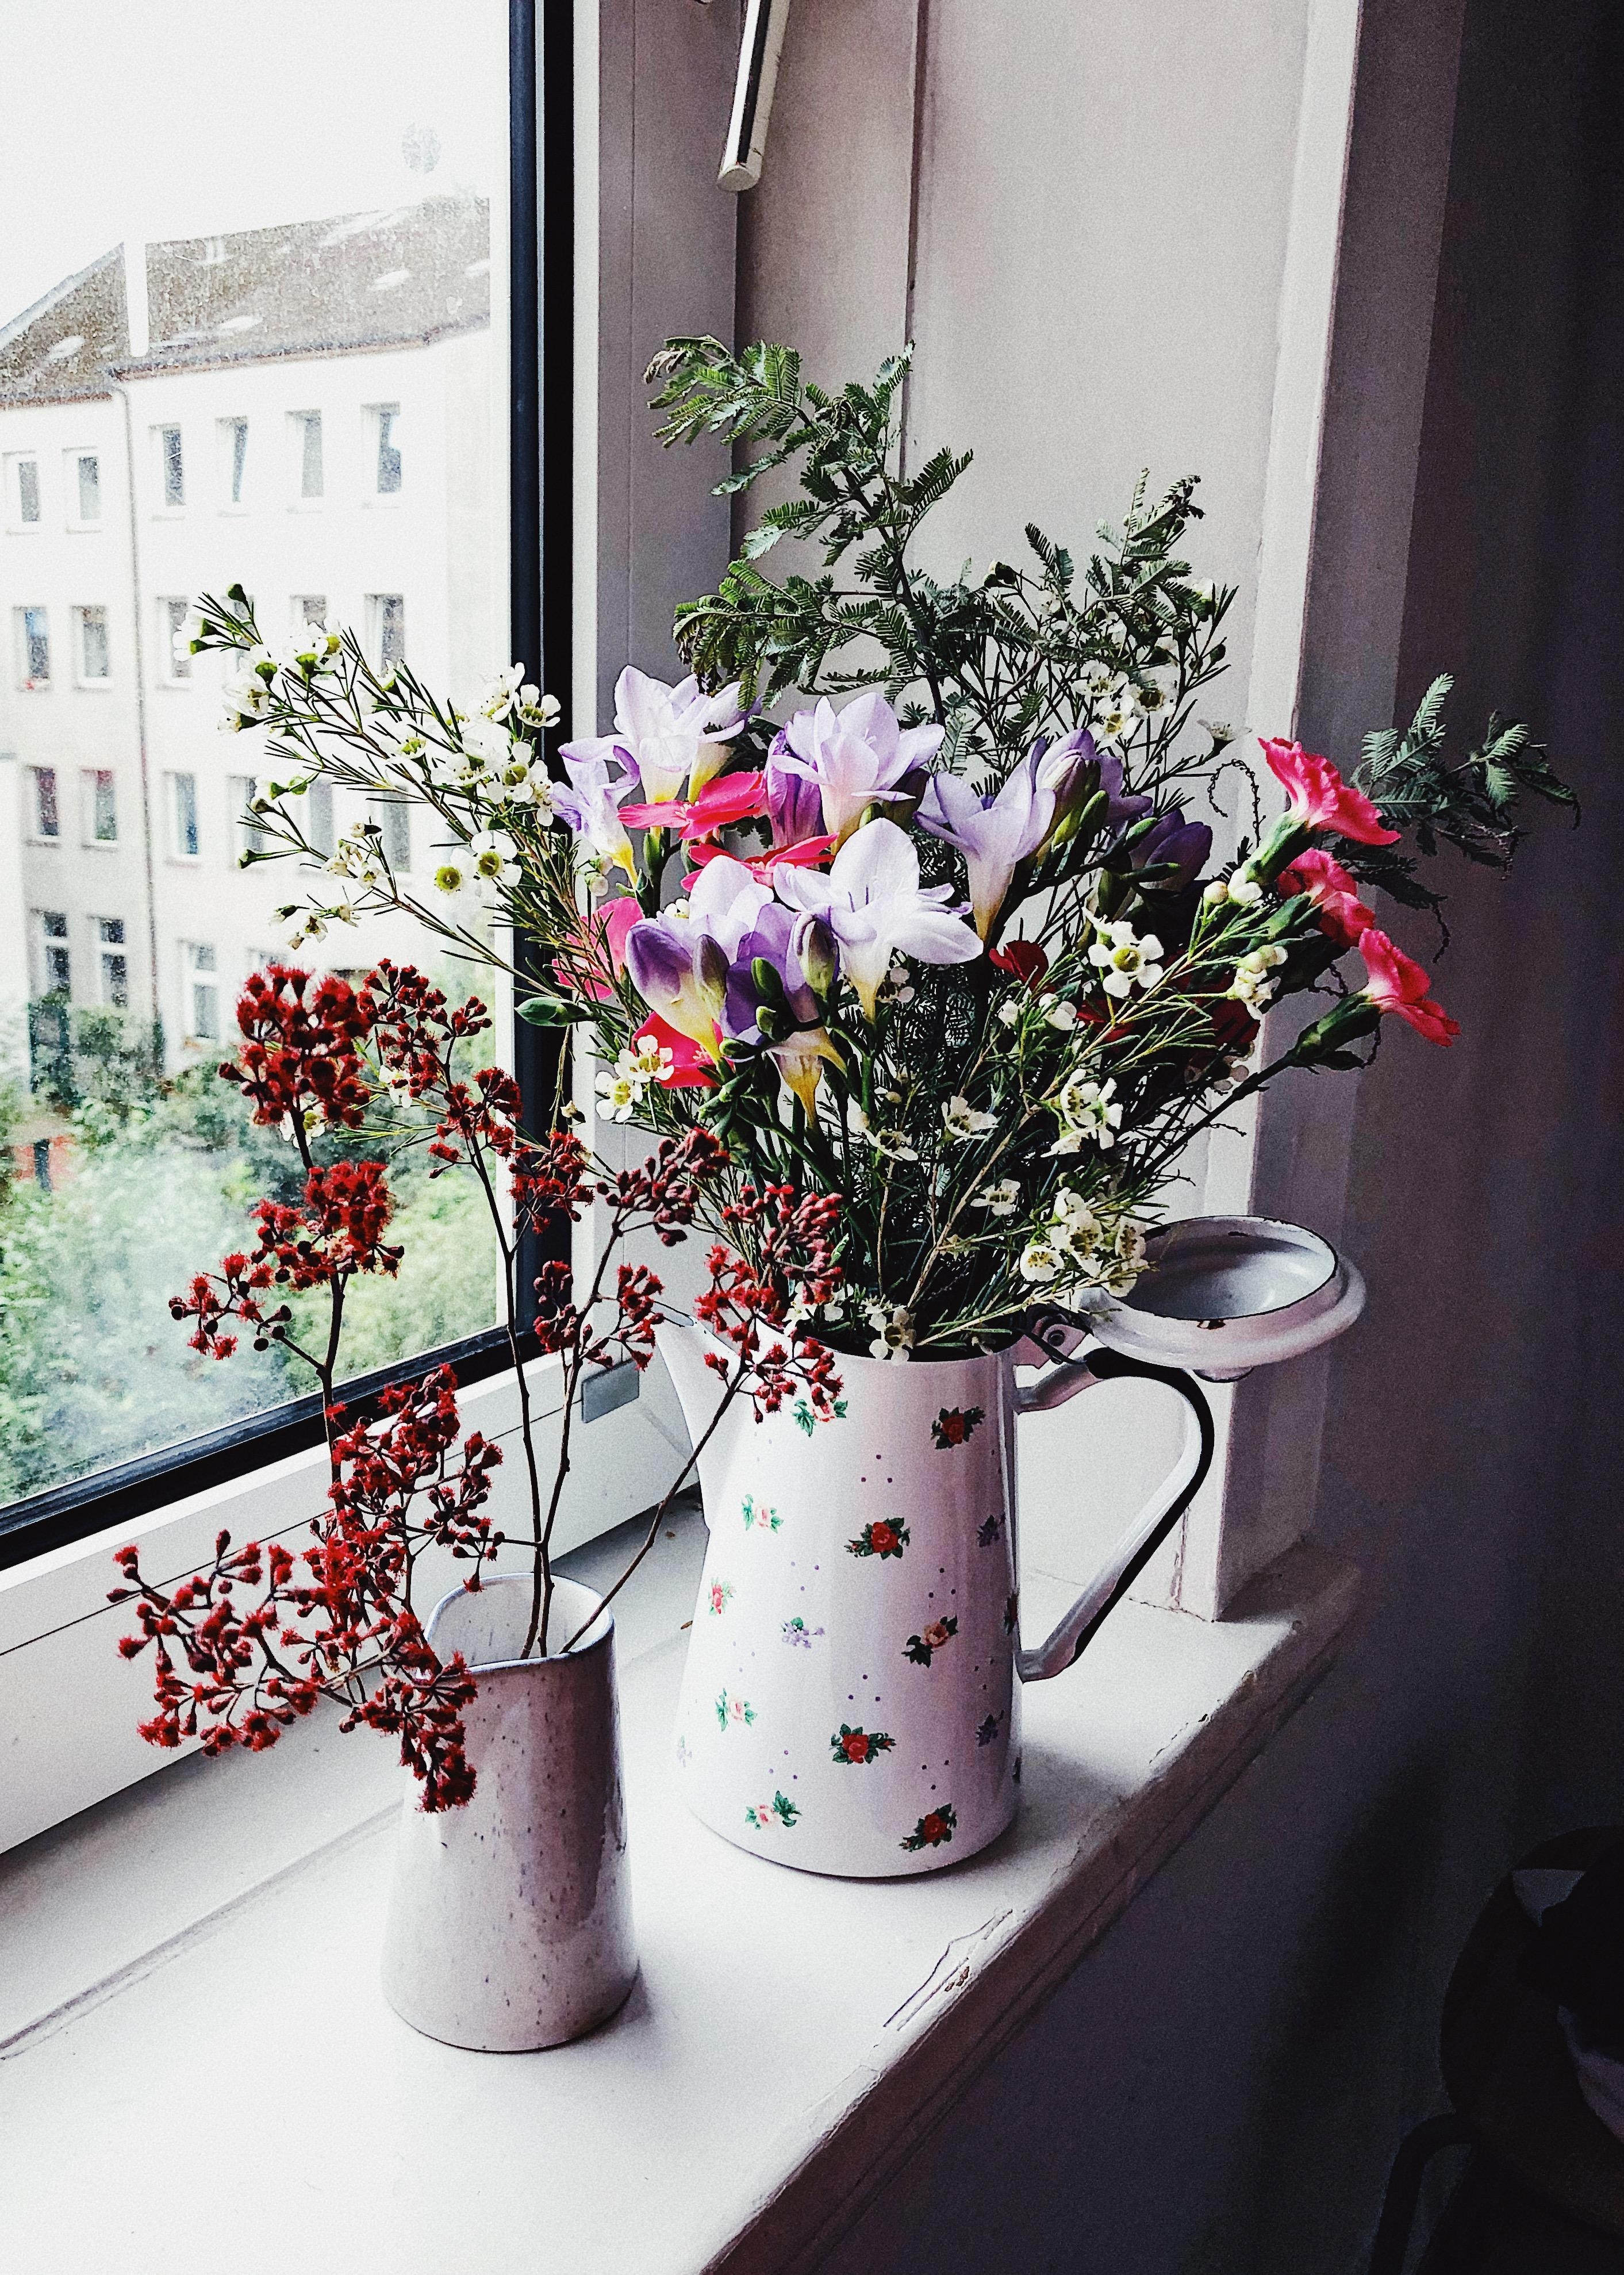 JOY
#flowers #flowersmakemehappy #view #blumenliebe #blumen #vasen